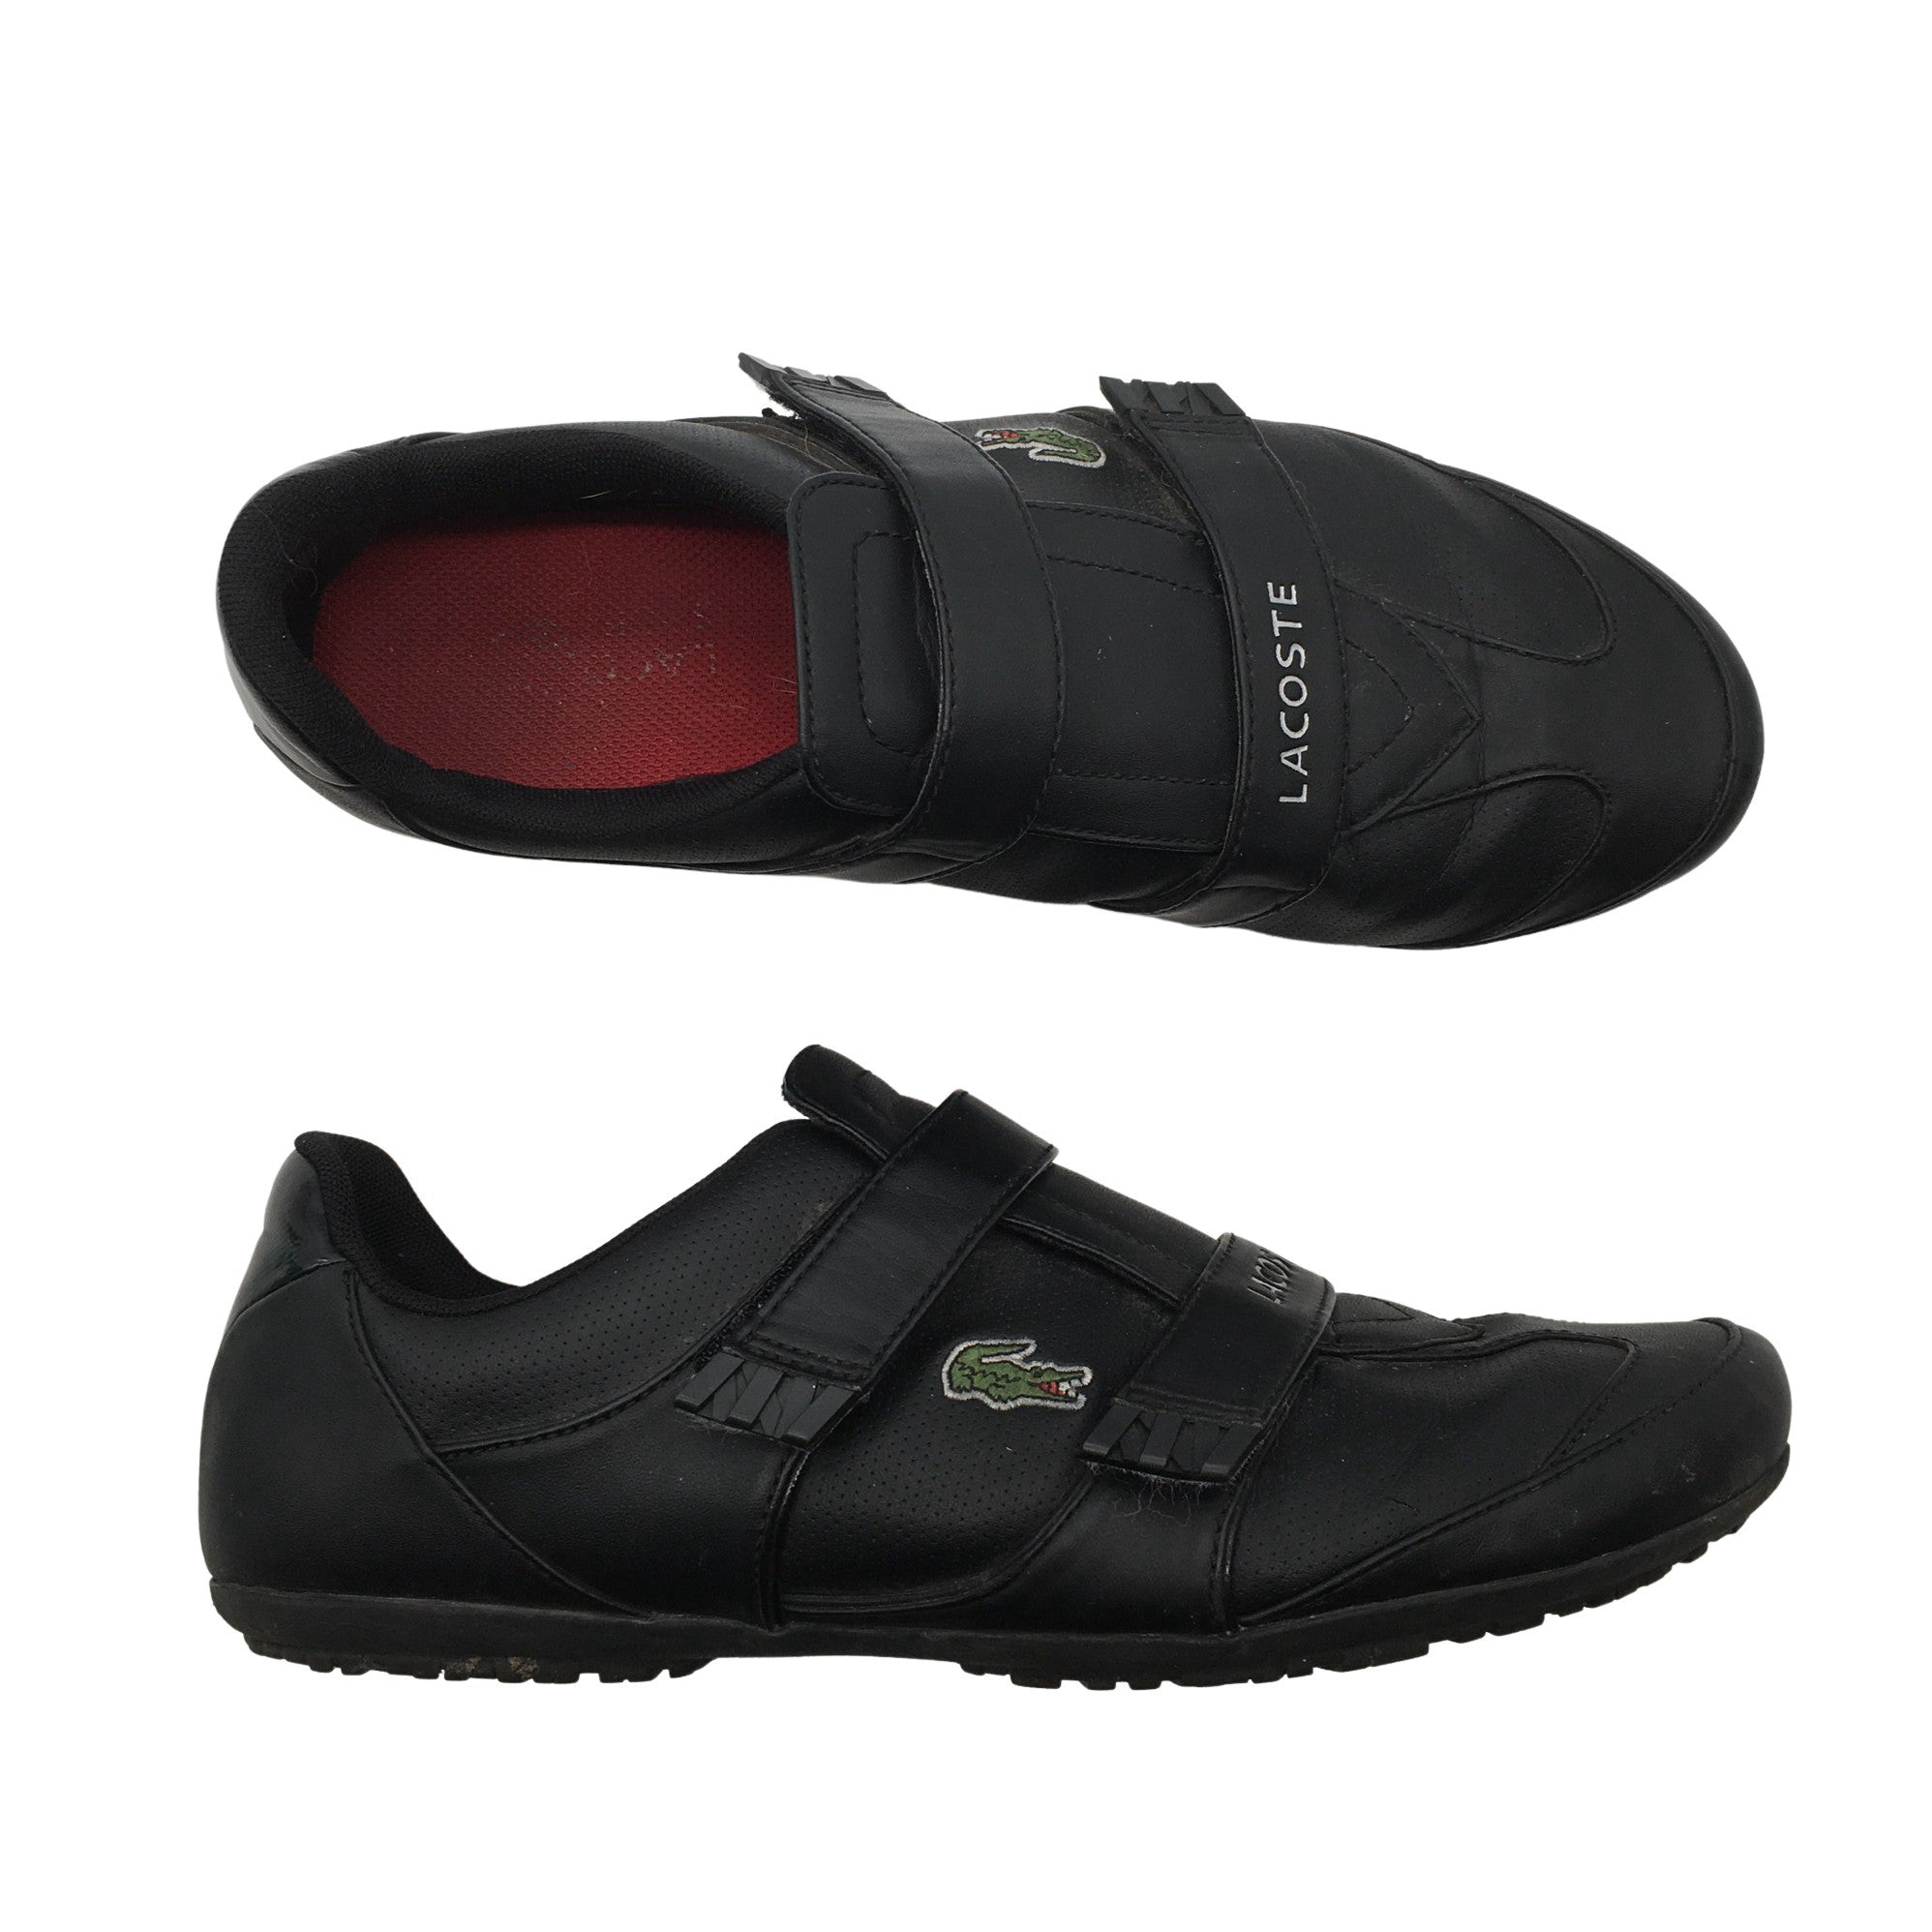 New Lacoste Men Shoes Partner Piste 0121 Navy India | Ubuy